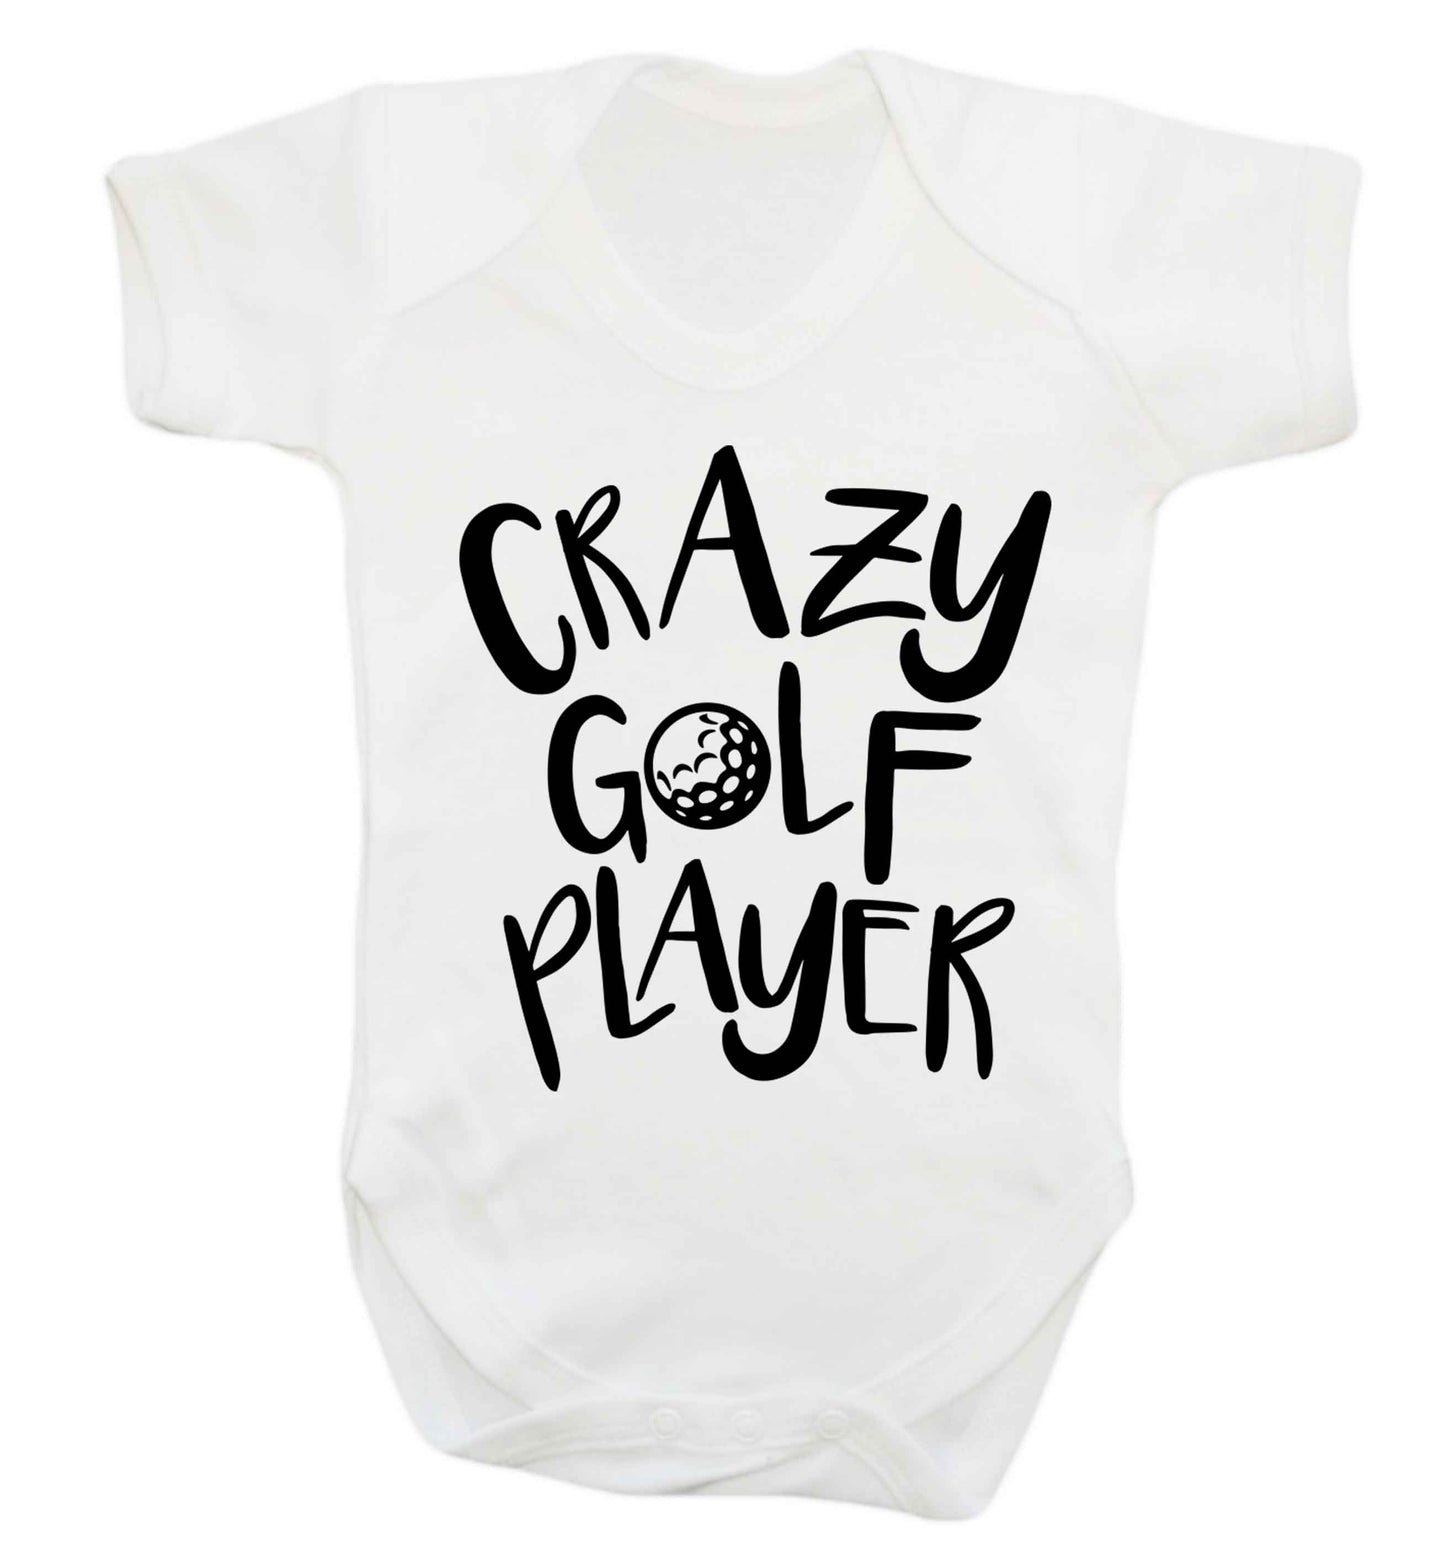 Crazy golf player Baby Vest white 18-24 months